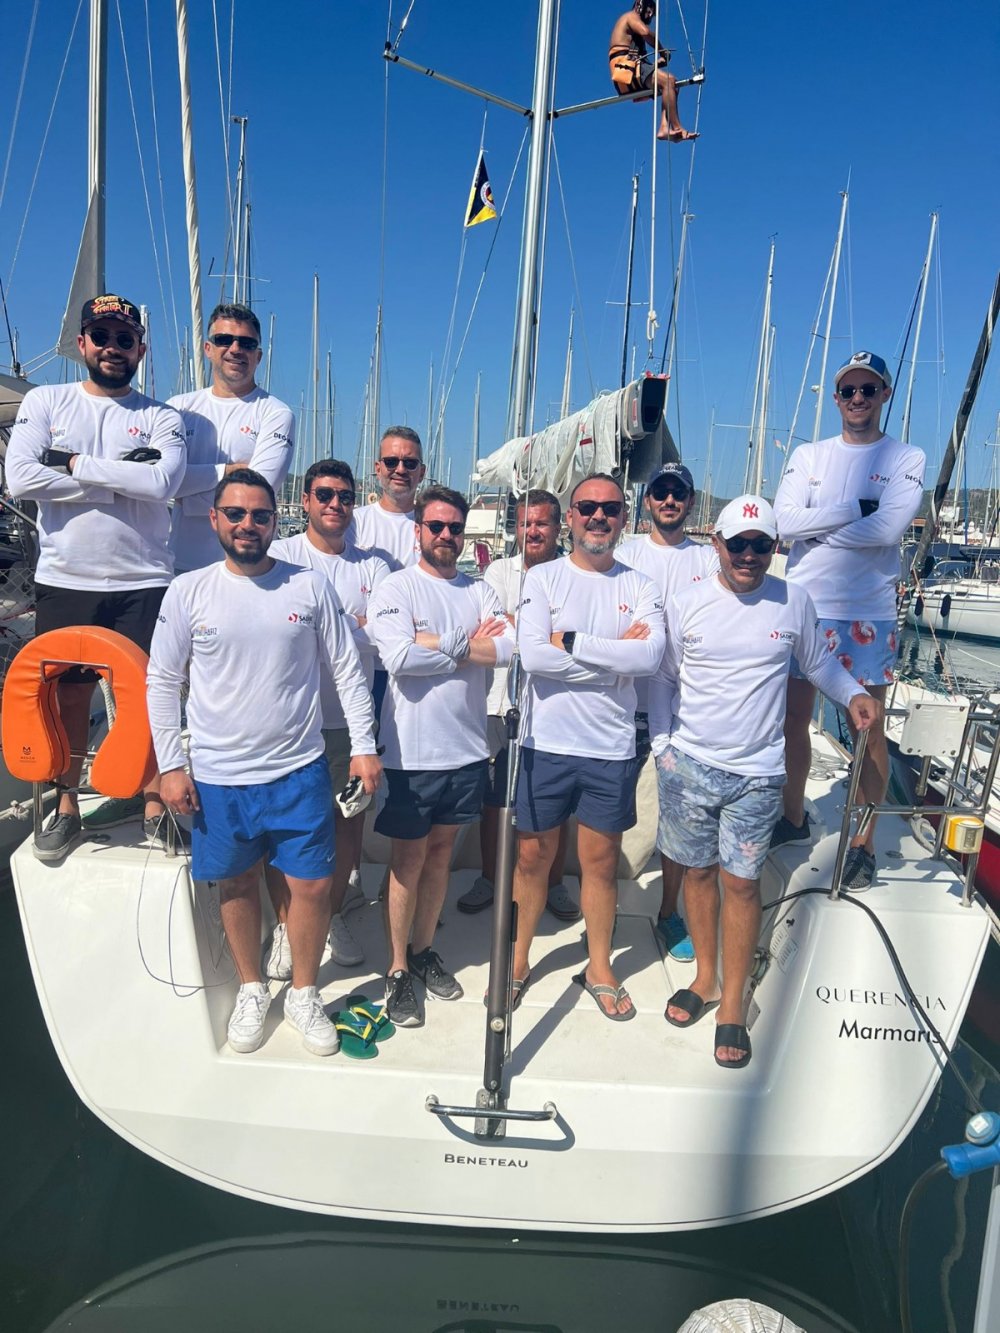 Marmaris Uluslararası Yat Kulübü ve Rodos Açık Deniz Yat Kulübü’nün ortaklaşa düzenlediği “15. Channel Regatta” 17-18-19 Eylül 2022 tarihlerinde Marmaris'te gerçekleşen, sloganı ''Sailing Together'' olan ve 18 takımın katıldığı yarışa katılan DEGİAD şampiyon olmayı başardı.